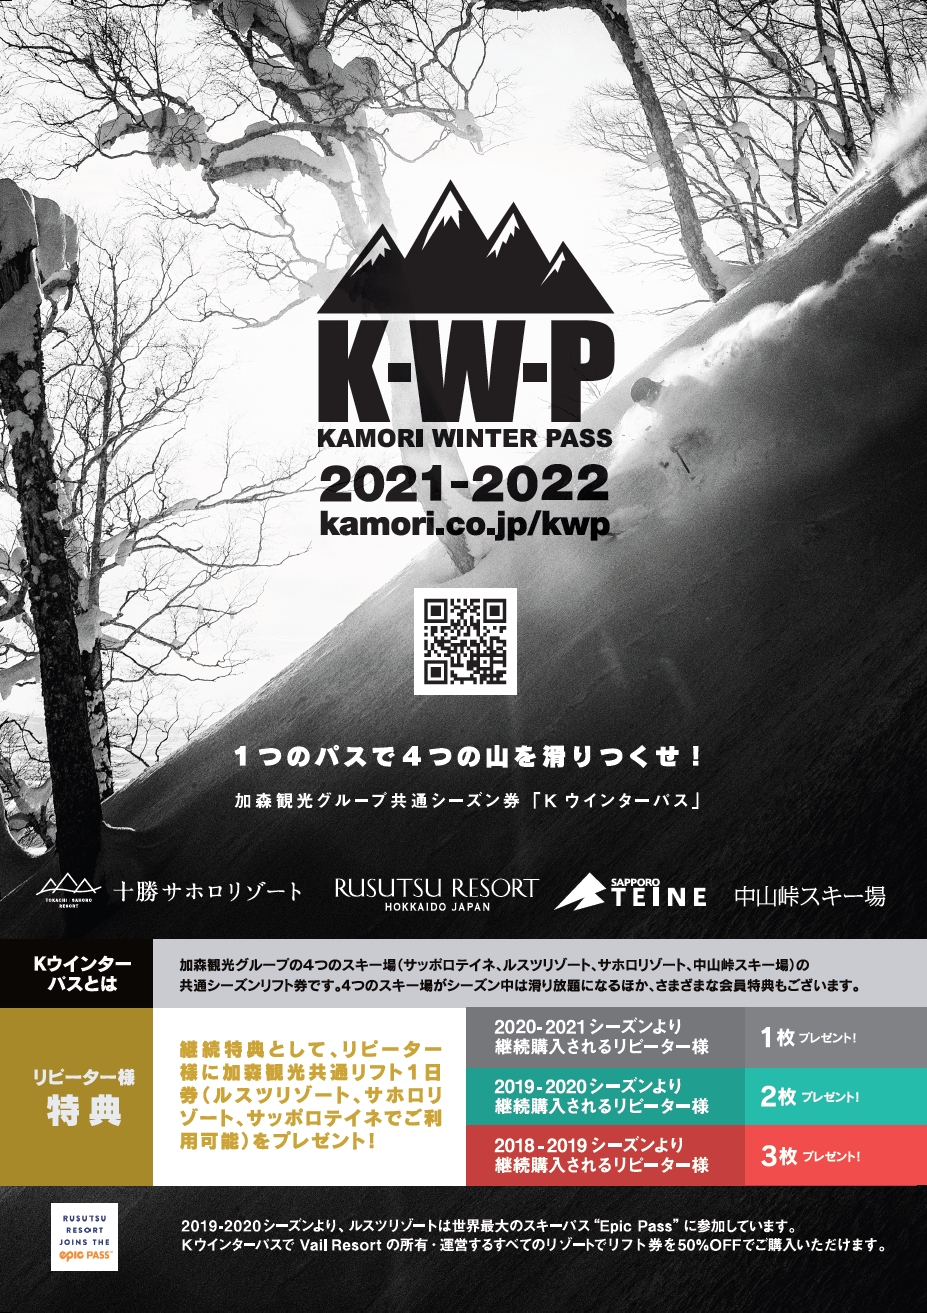 加森観光グループ共通リフトシーズン券『KWP 2021-2022』好評販売中 ...